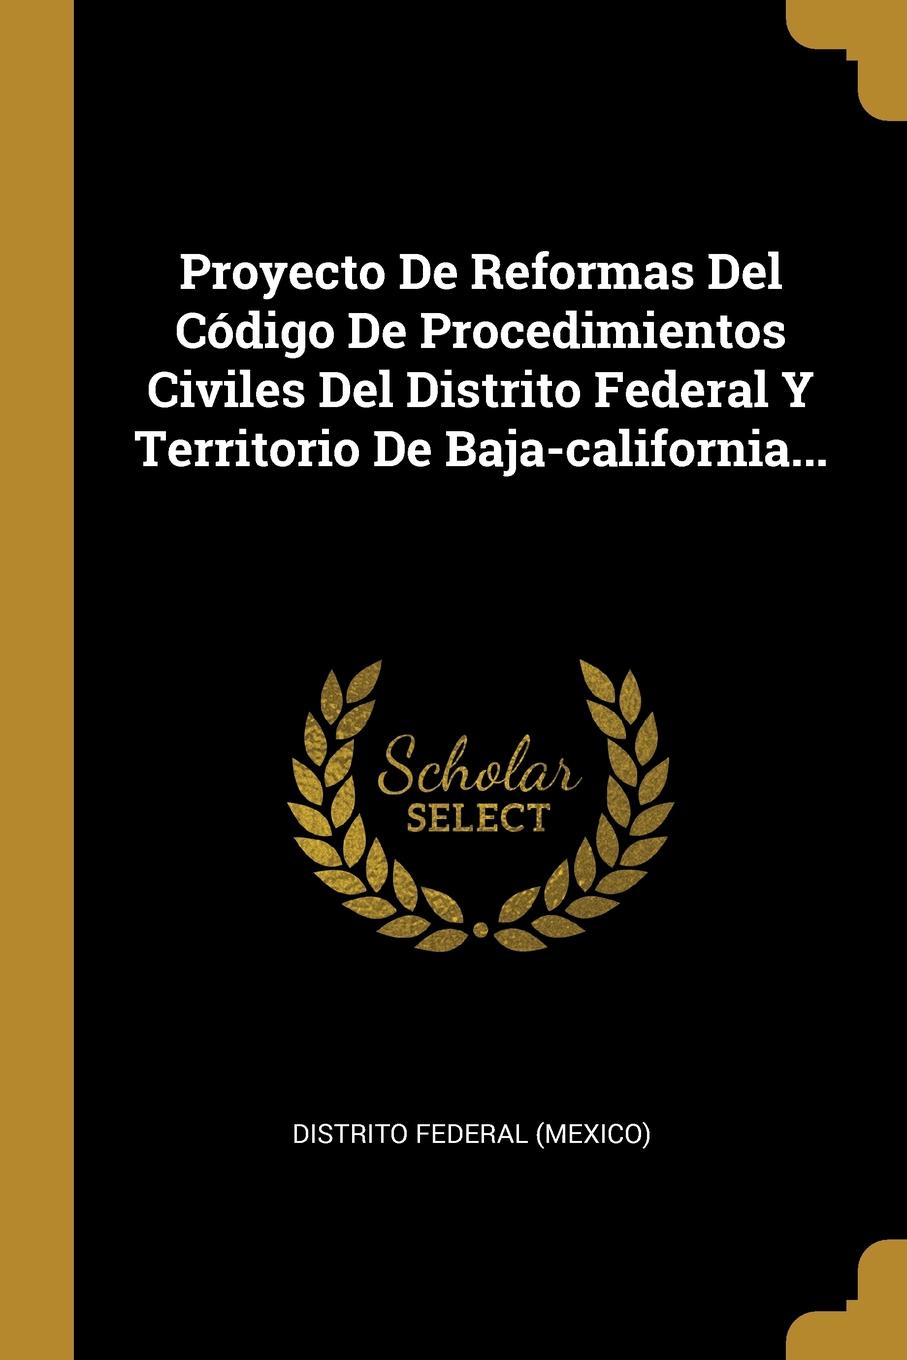 Proyecto De Reformas Del Codigo De Procedimientos Civiles Del Distrito Federal Y Territorio De Baja-california...